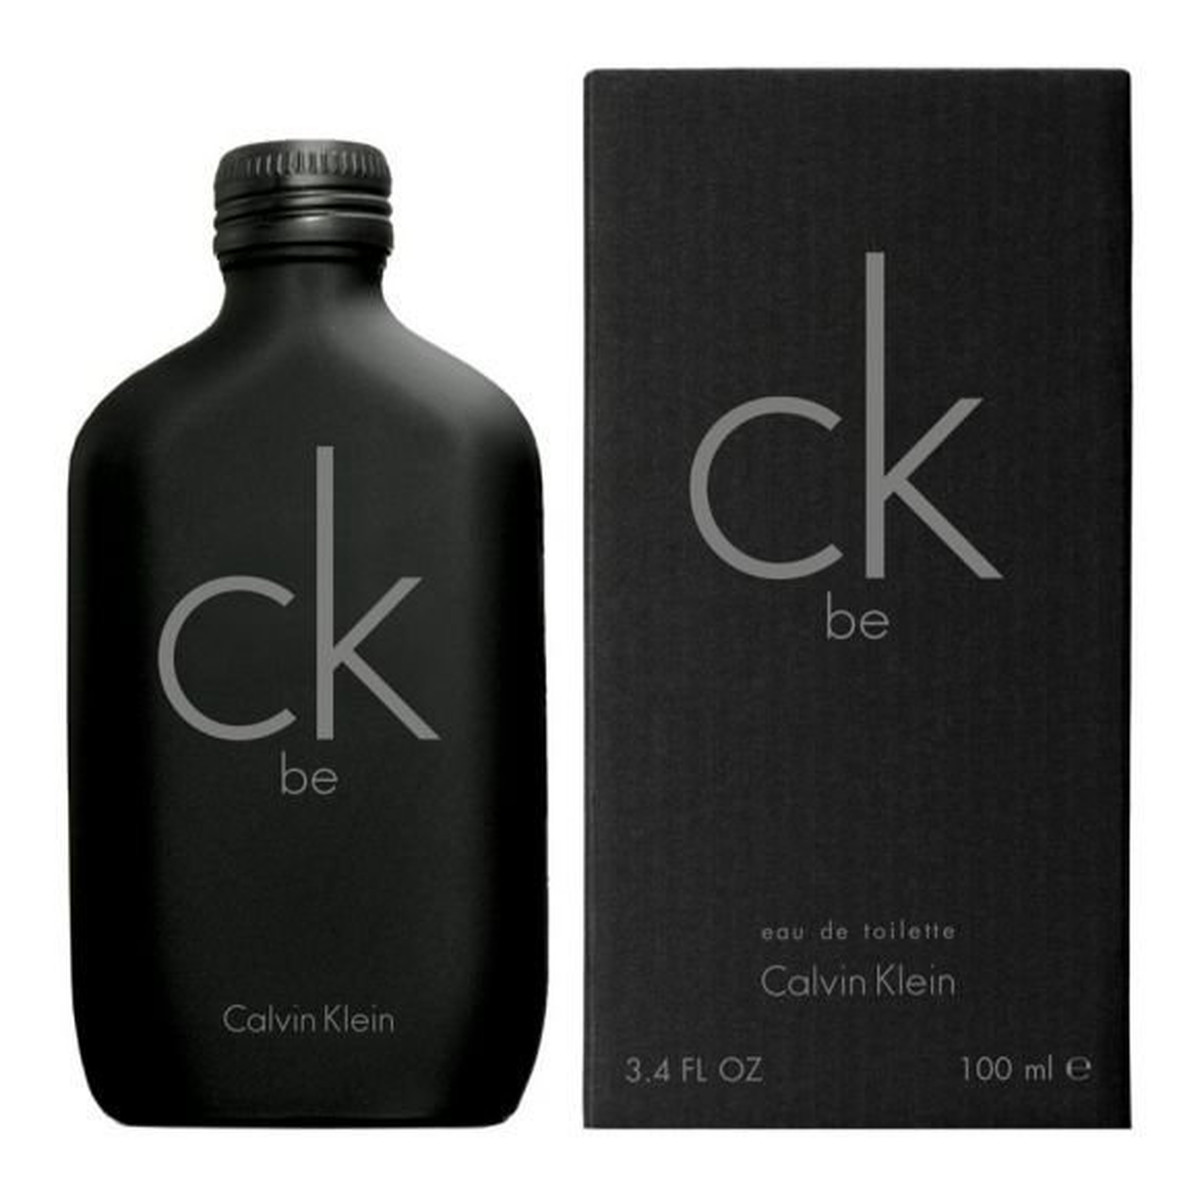 Calvin Klein Ck Be woda toaletowa 100ml